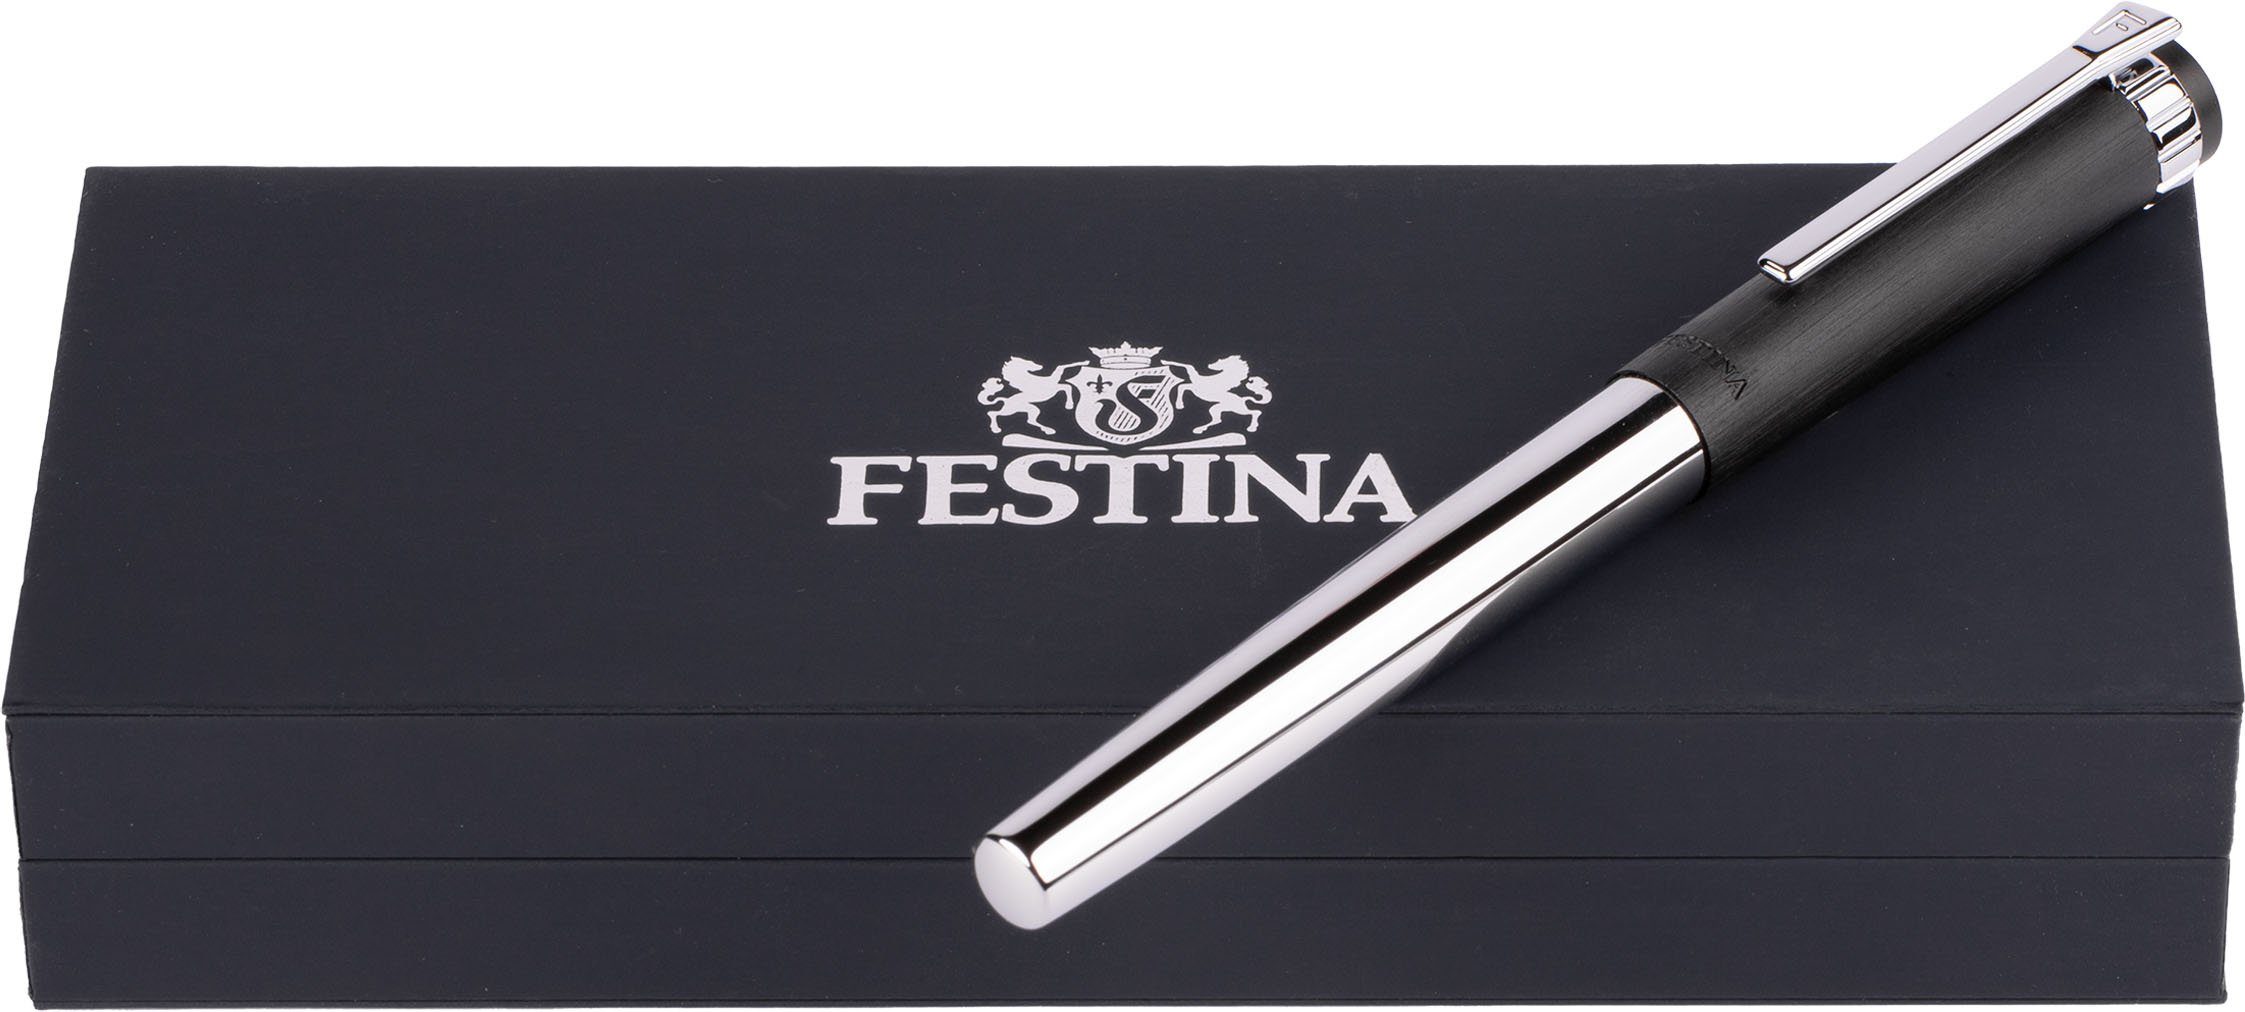 FWS4107/A, Geschenk als Prestige, Festina ideal Etui, auch Kugelschreiber inklusive